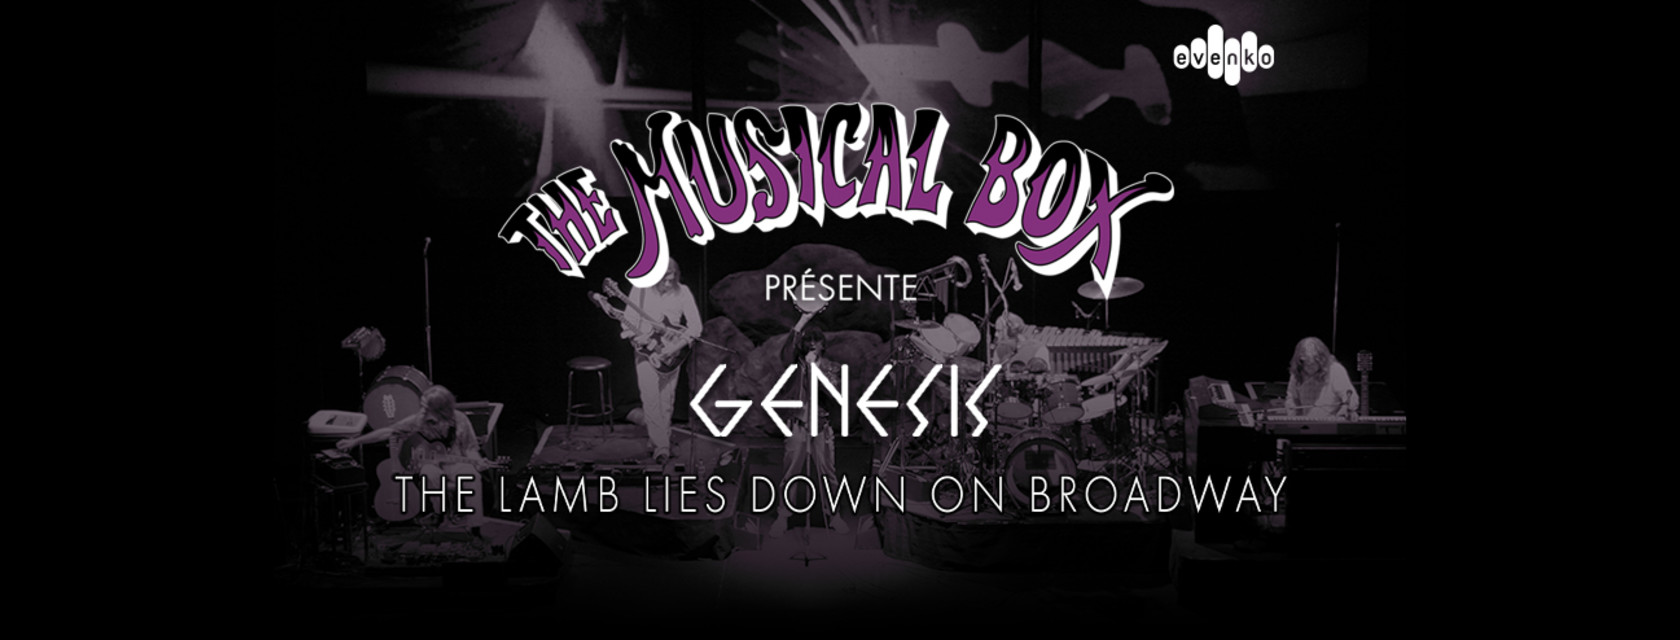 THE MUSICAL BOX présentera pour une dernière fois au Canada The Lamb Lies Down On Broadway à l’Amphithéâtre Cogeco!